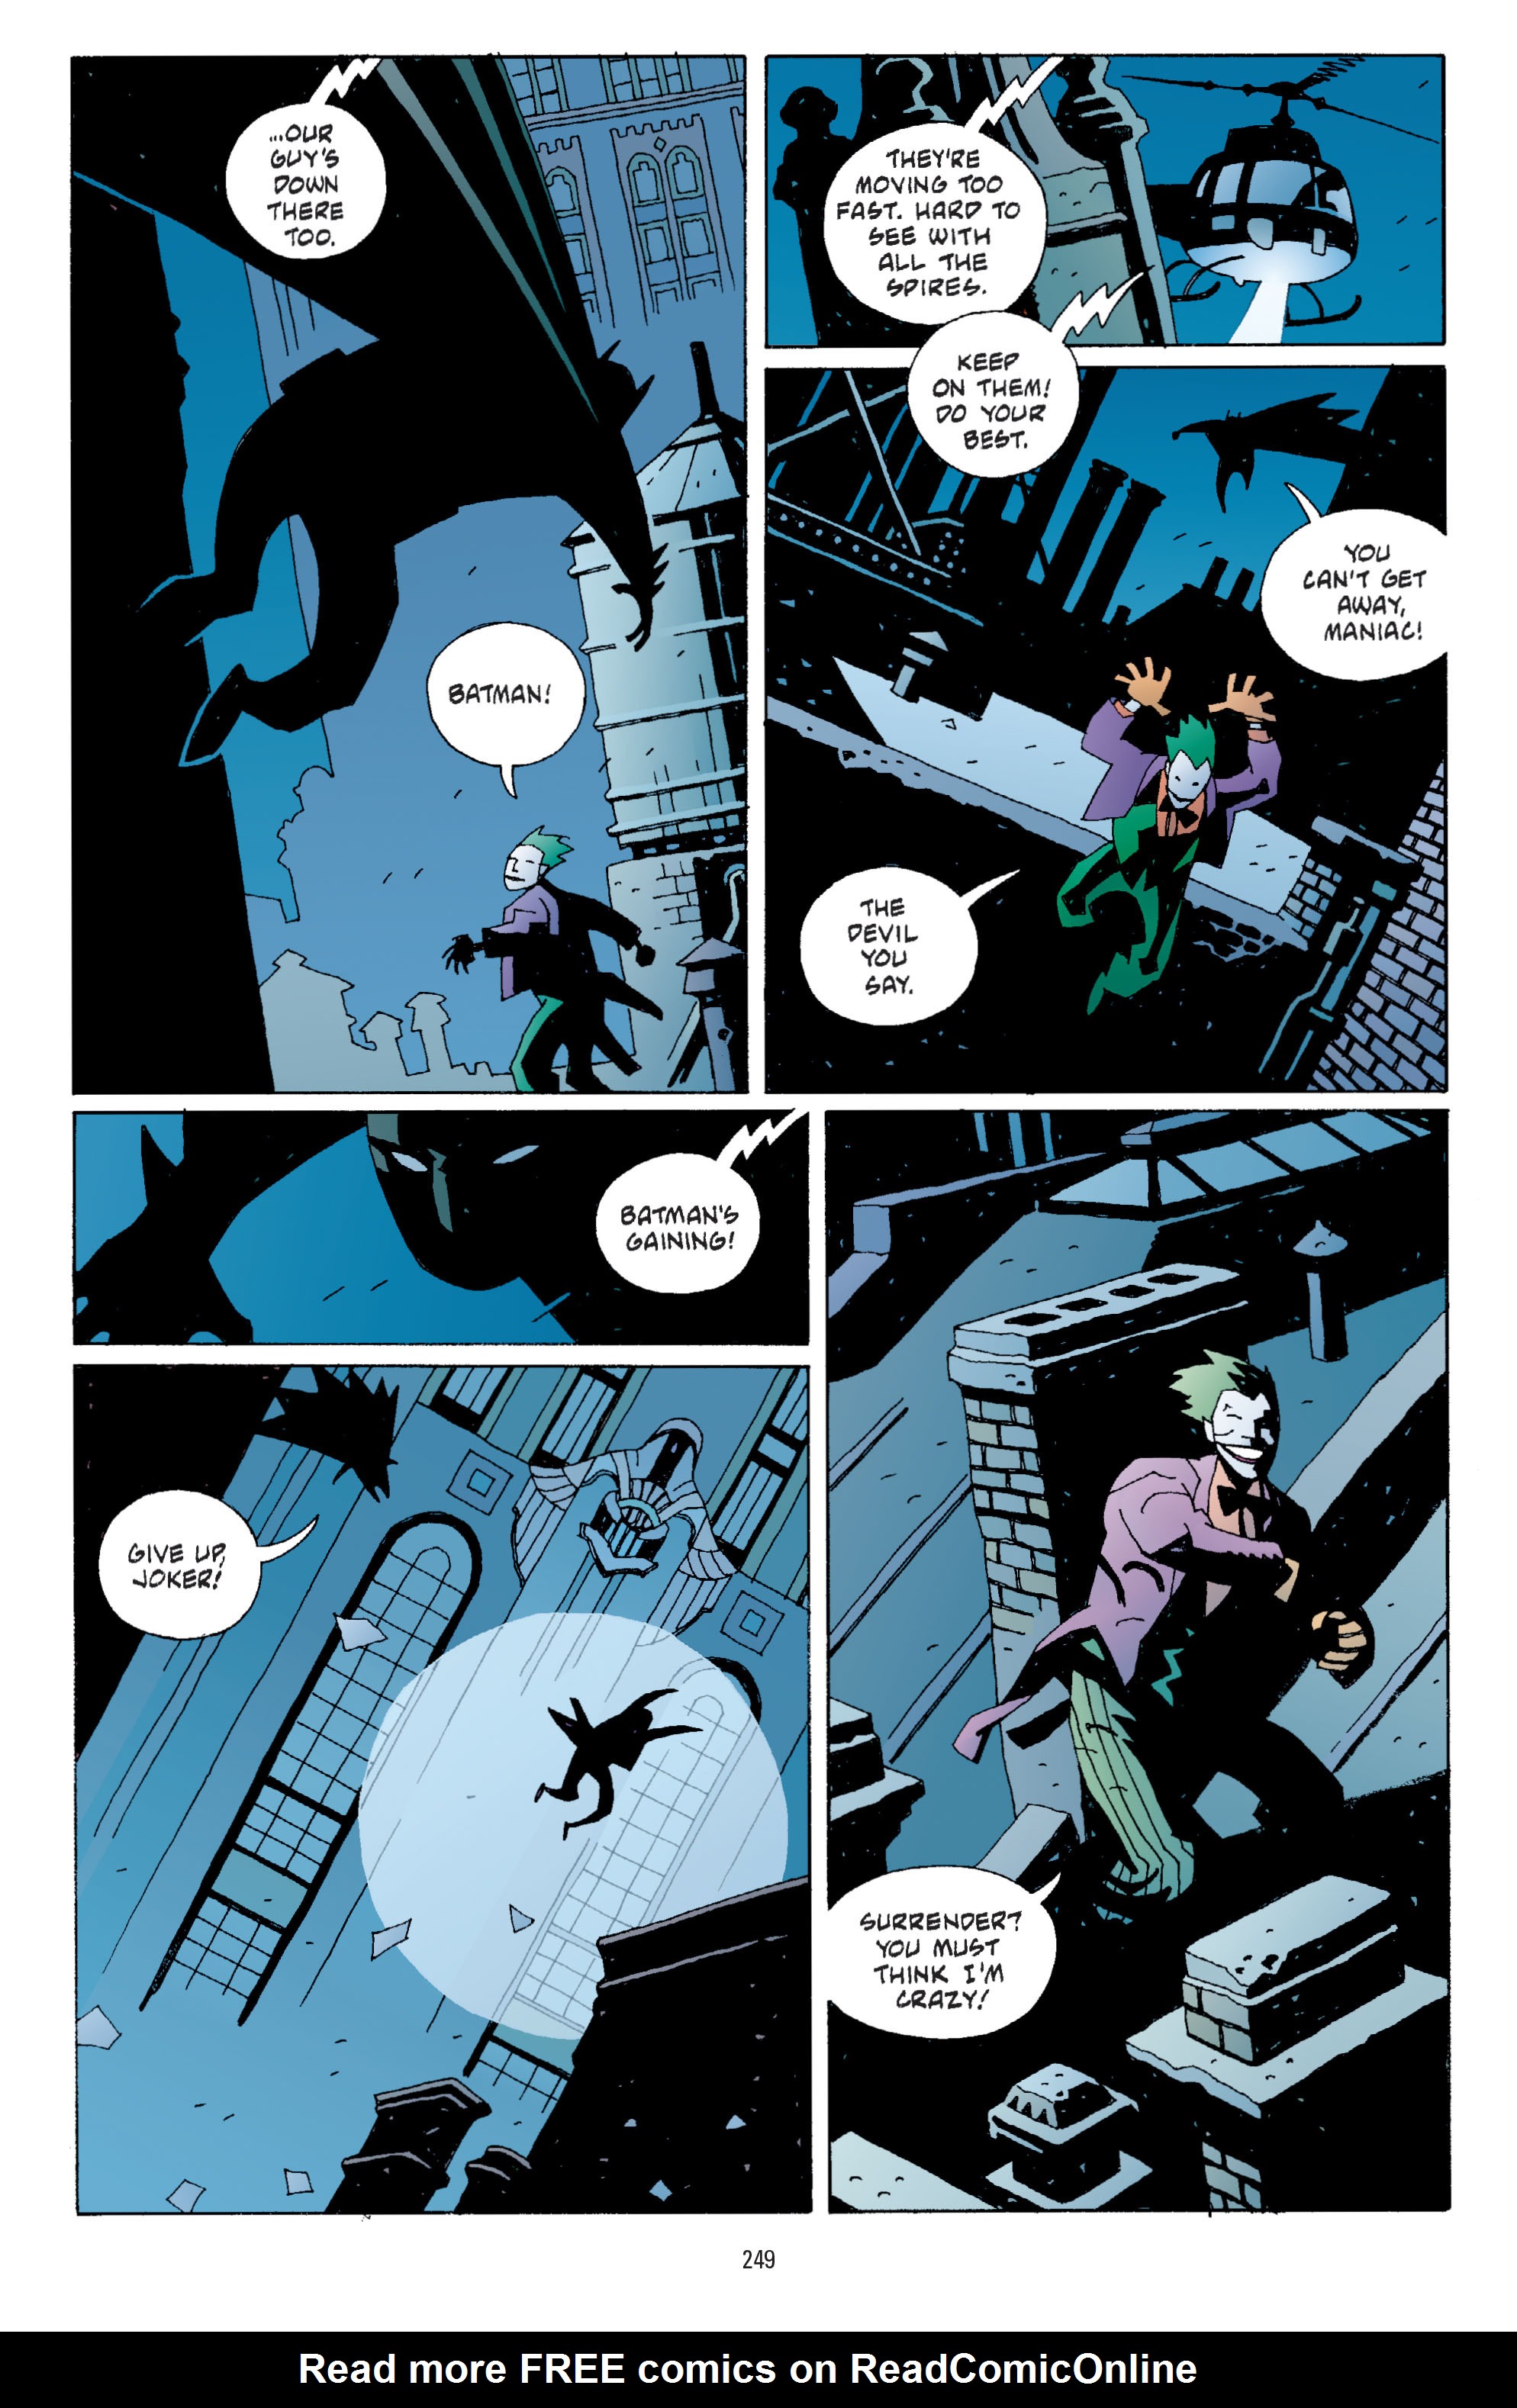 DC Comics/Dark Horse Comics: Justice League Full #1 - English 240